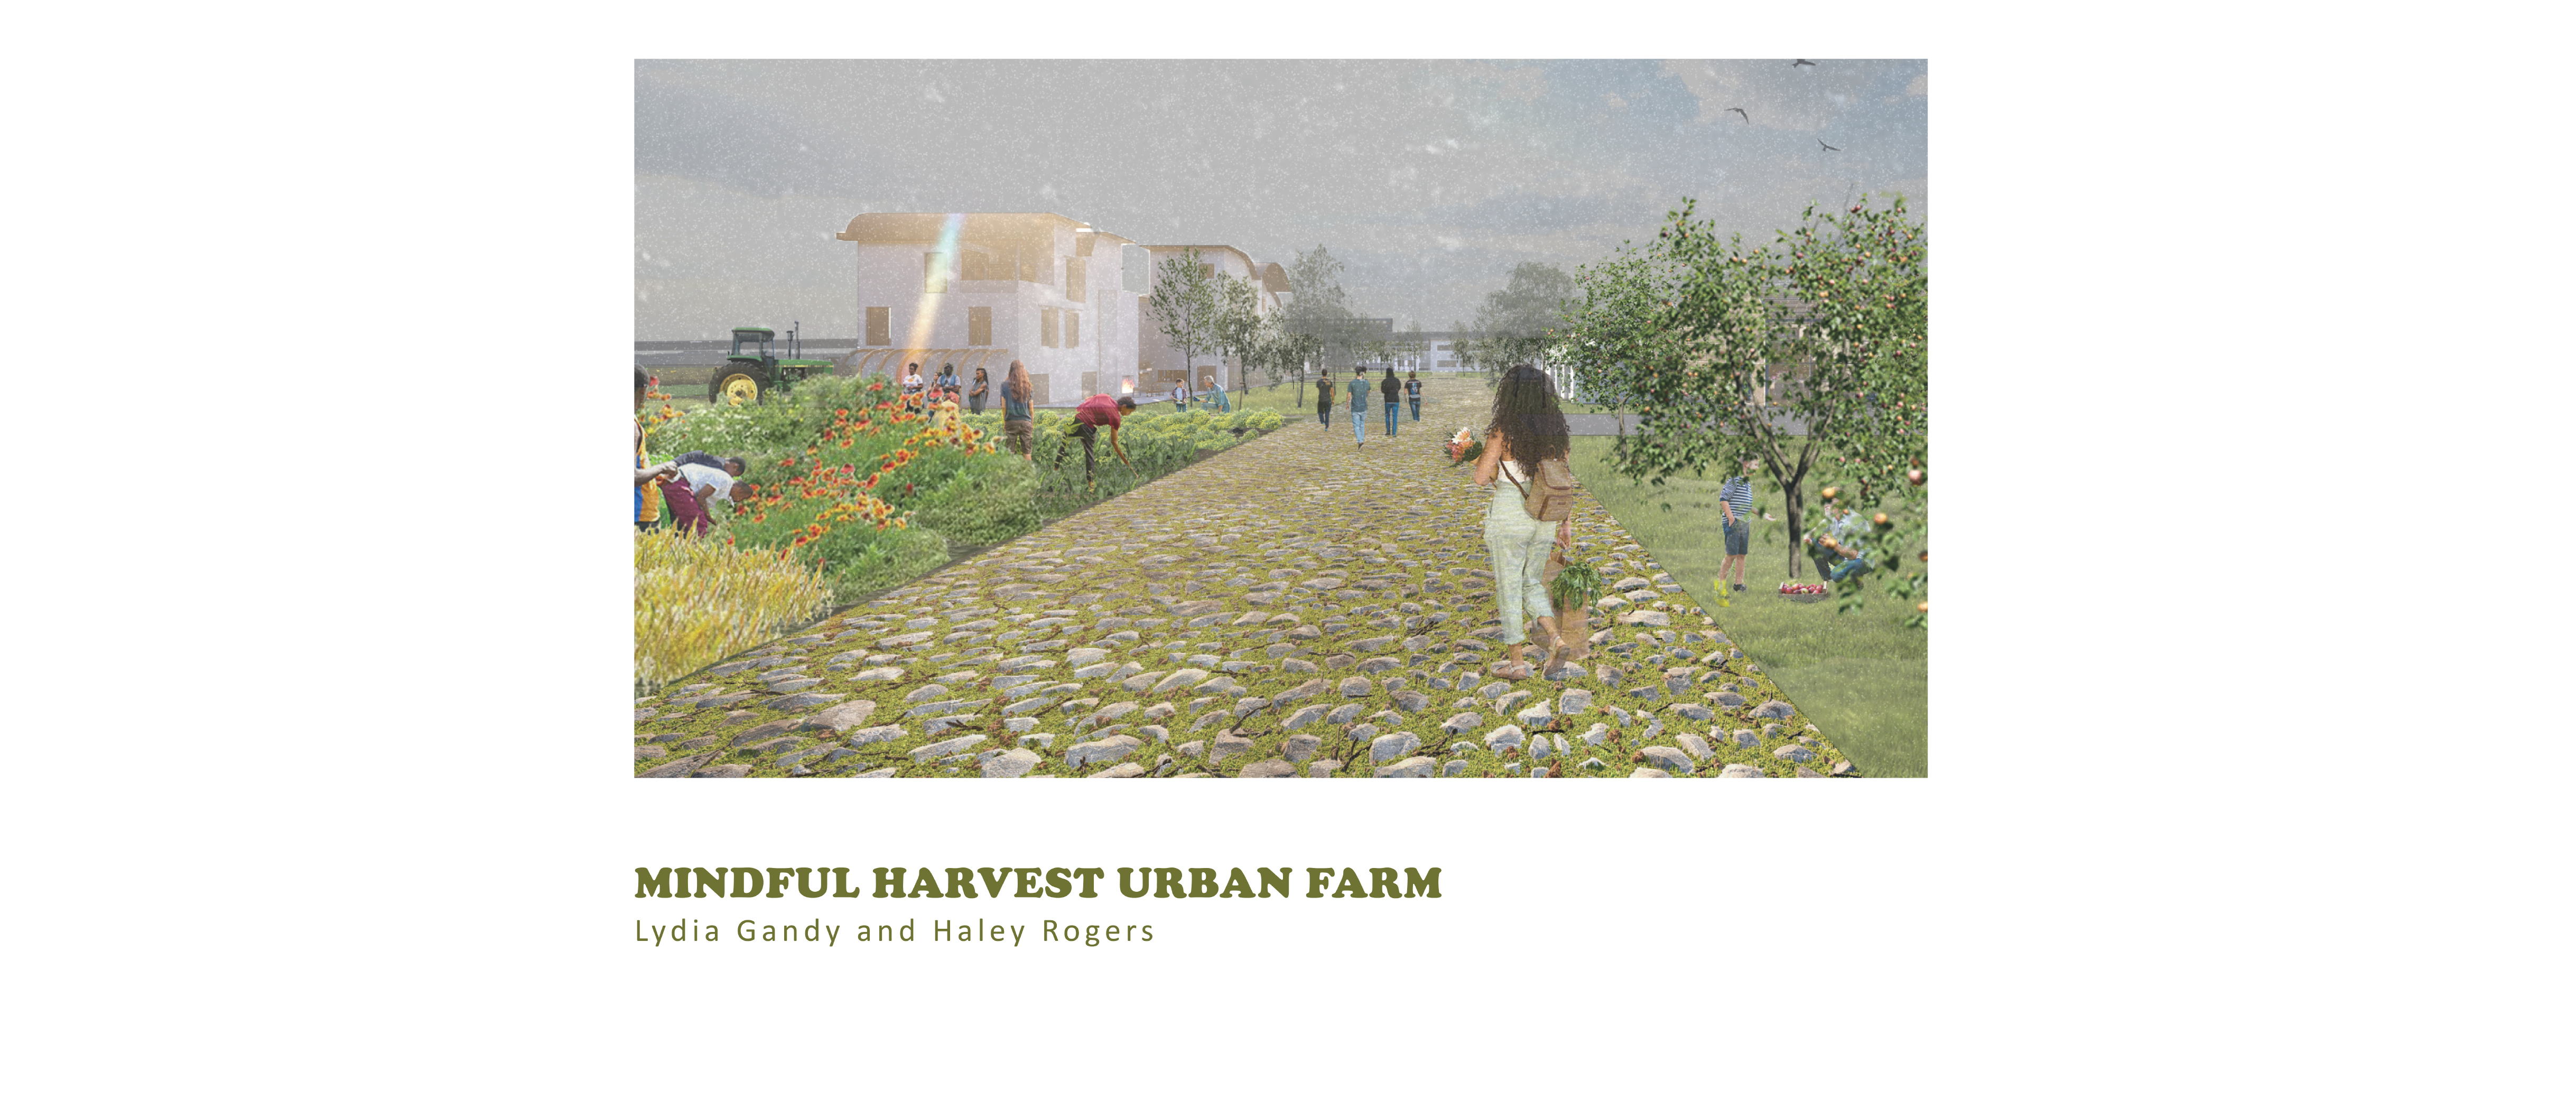 Mindful Harvest Urban Farm | Haley Rogers & Lydia Gandy | Arch 8920 | Professor Heine